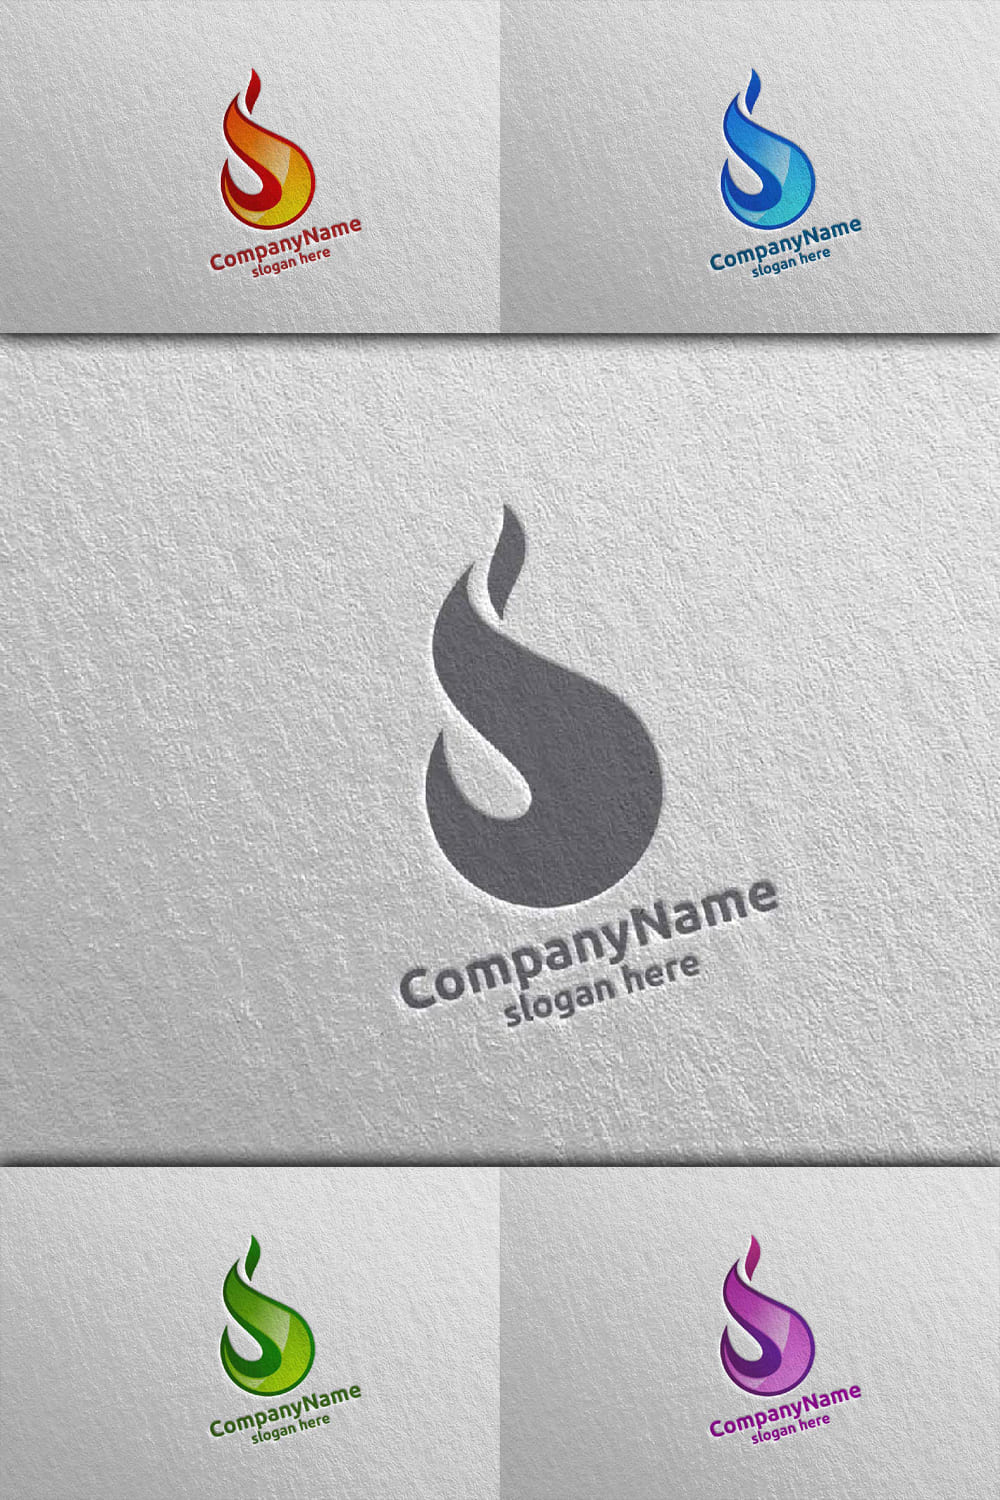 3D Fire Flame Element Logo Design 6 - Pinterest.